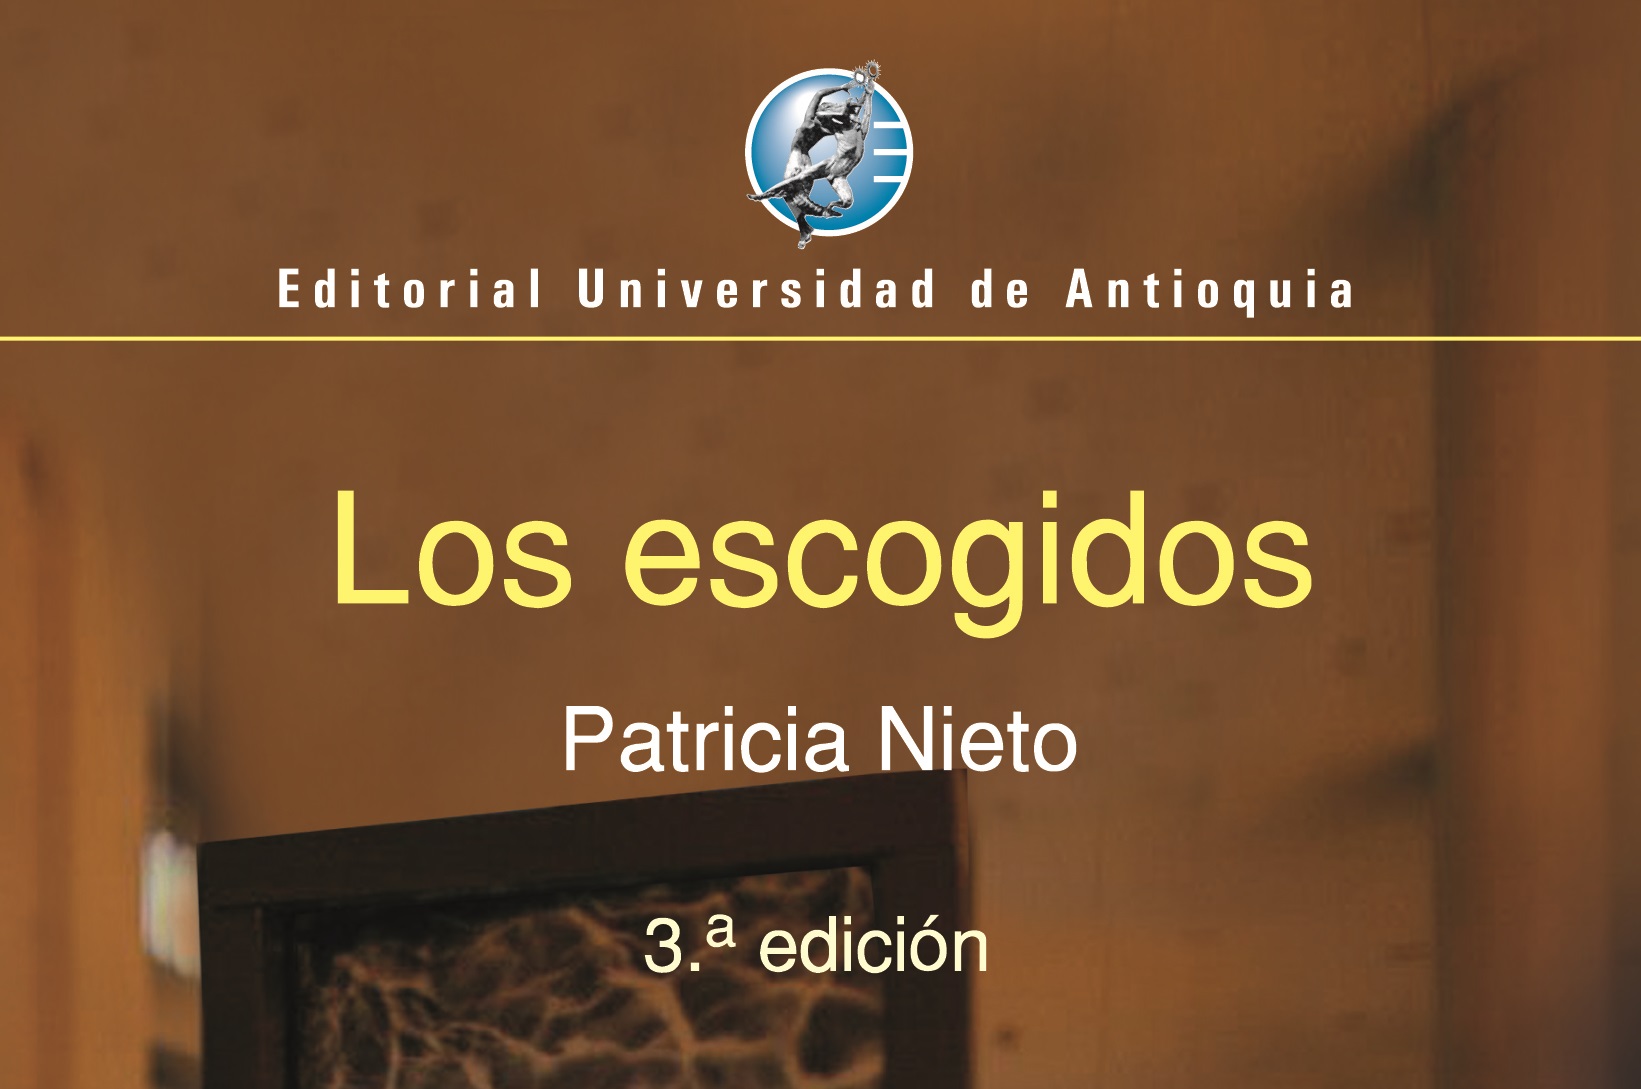  Patricia Nieto habla de la tercera edición de Los escogidos